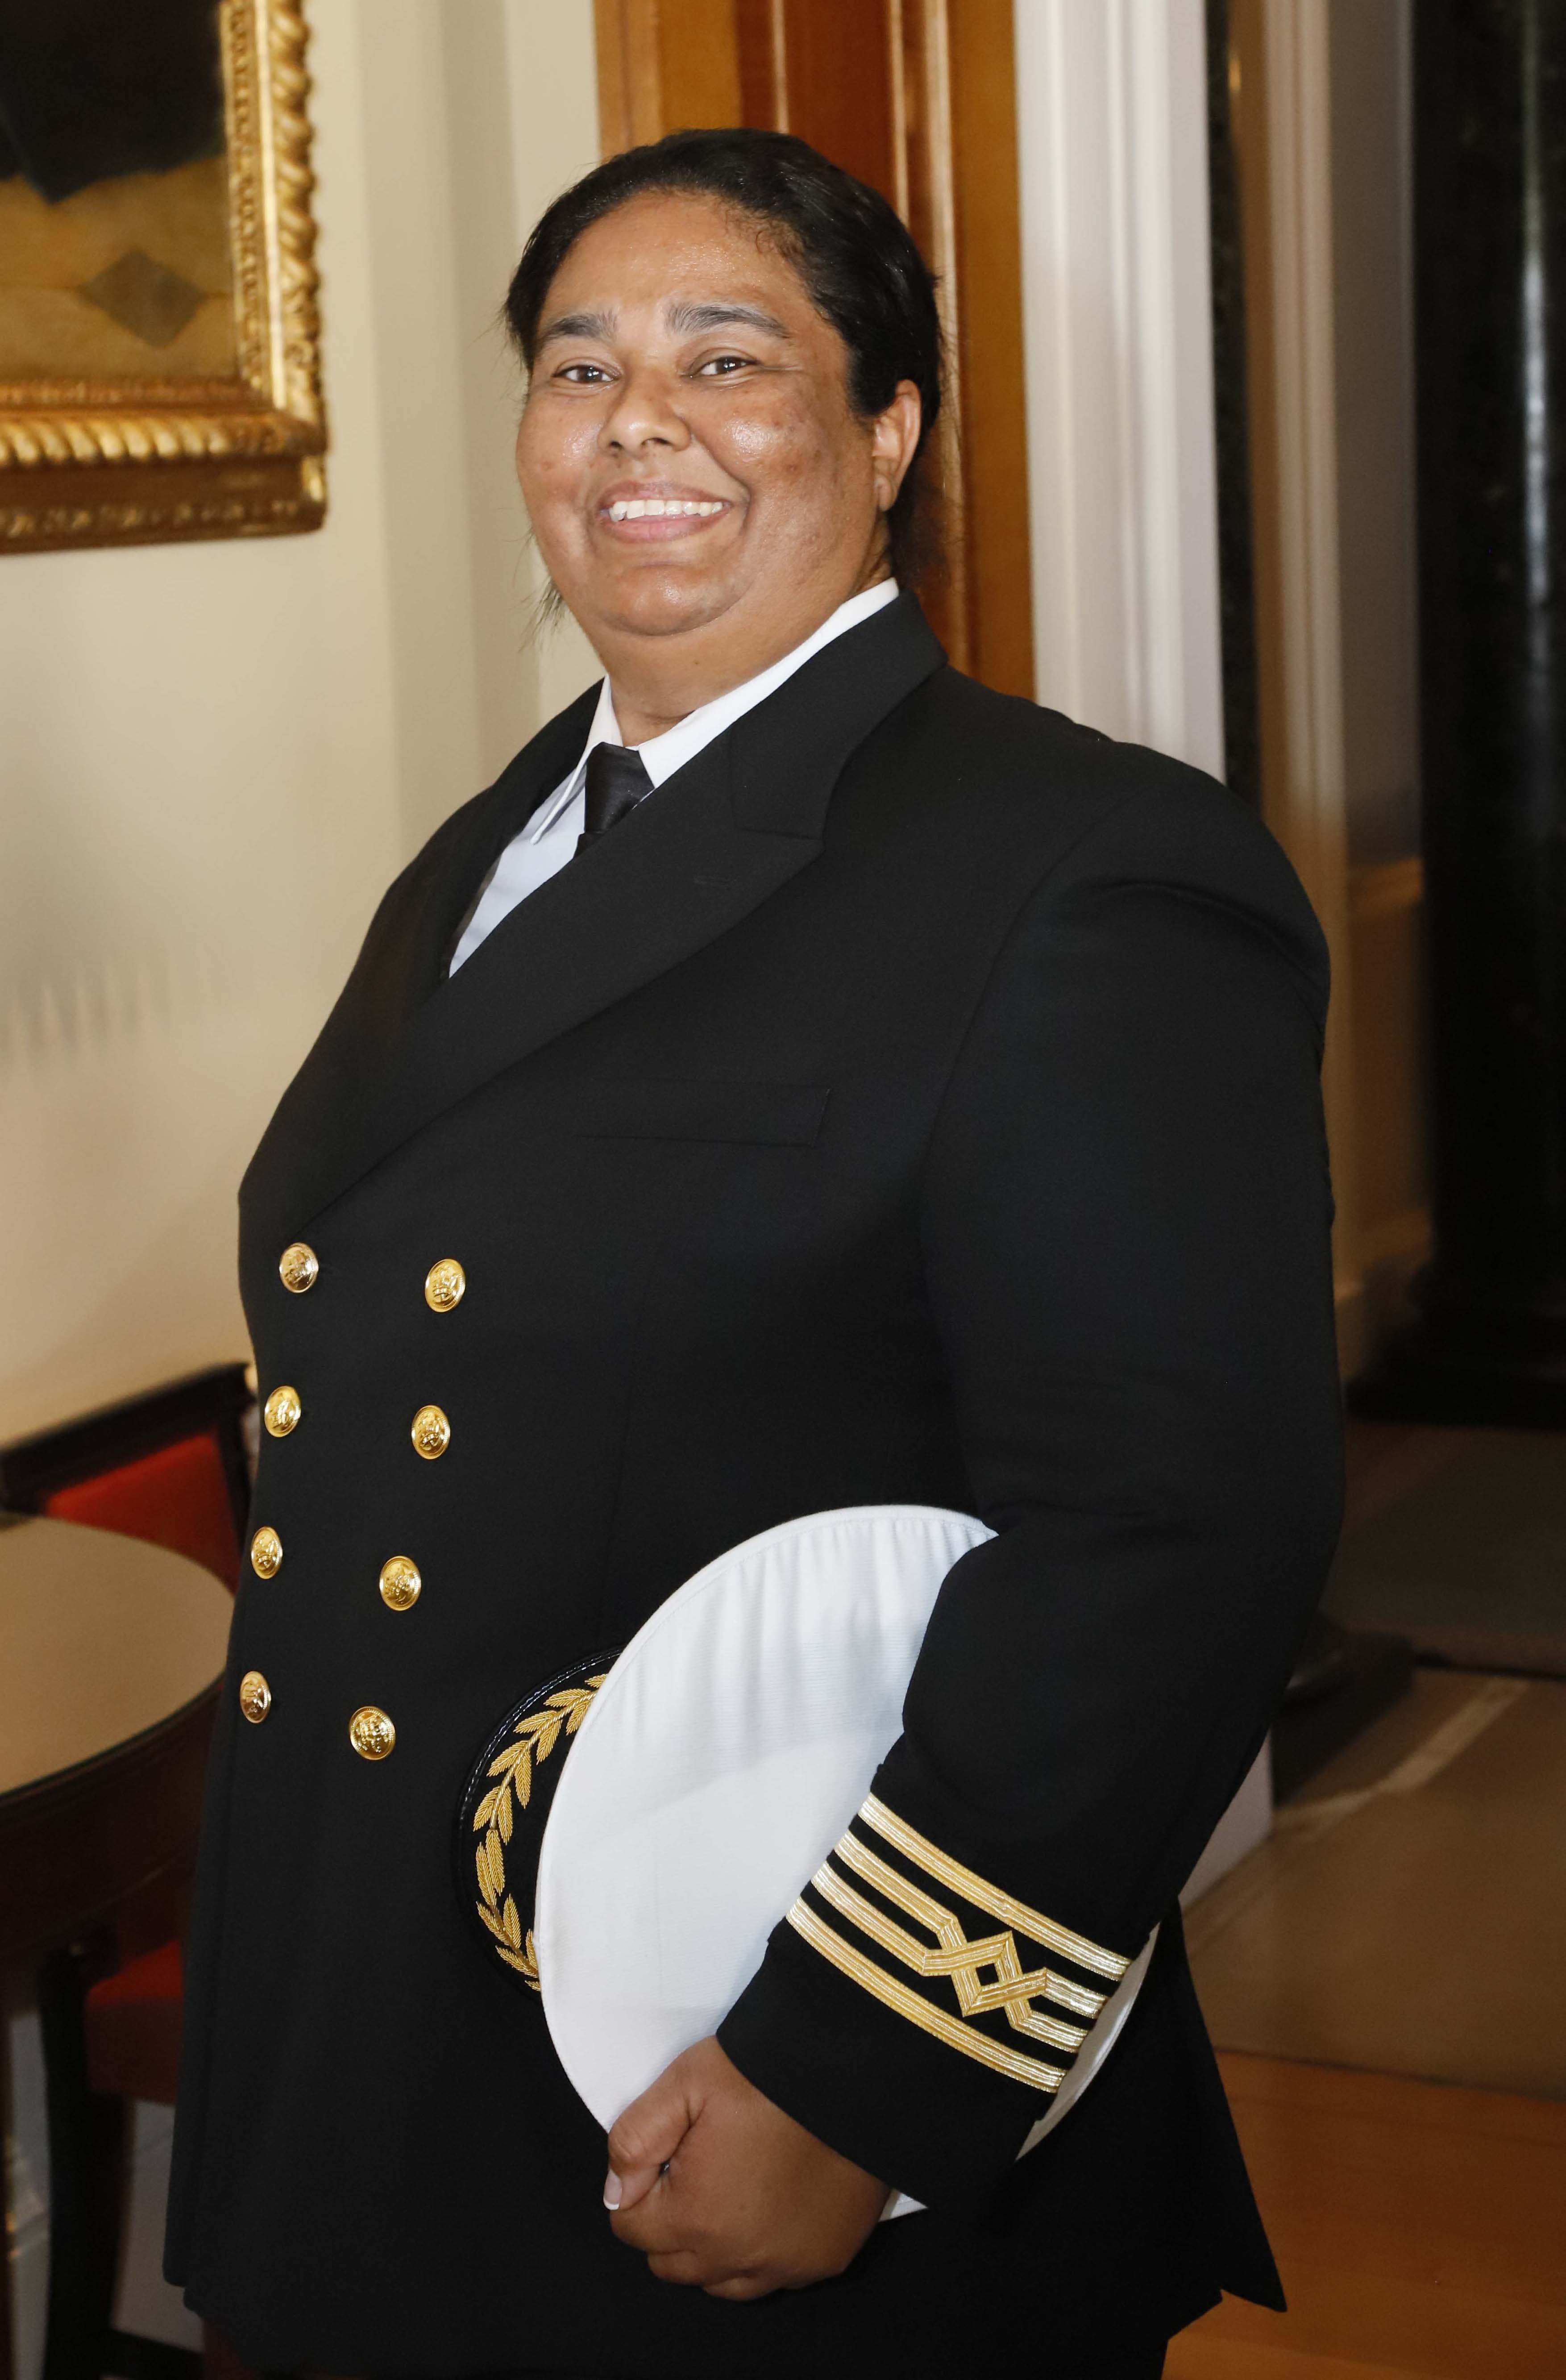 Captain Belinda Bennett of Windstar Cruises